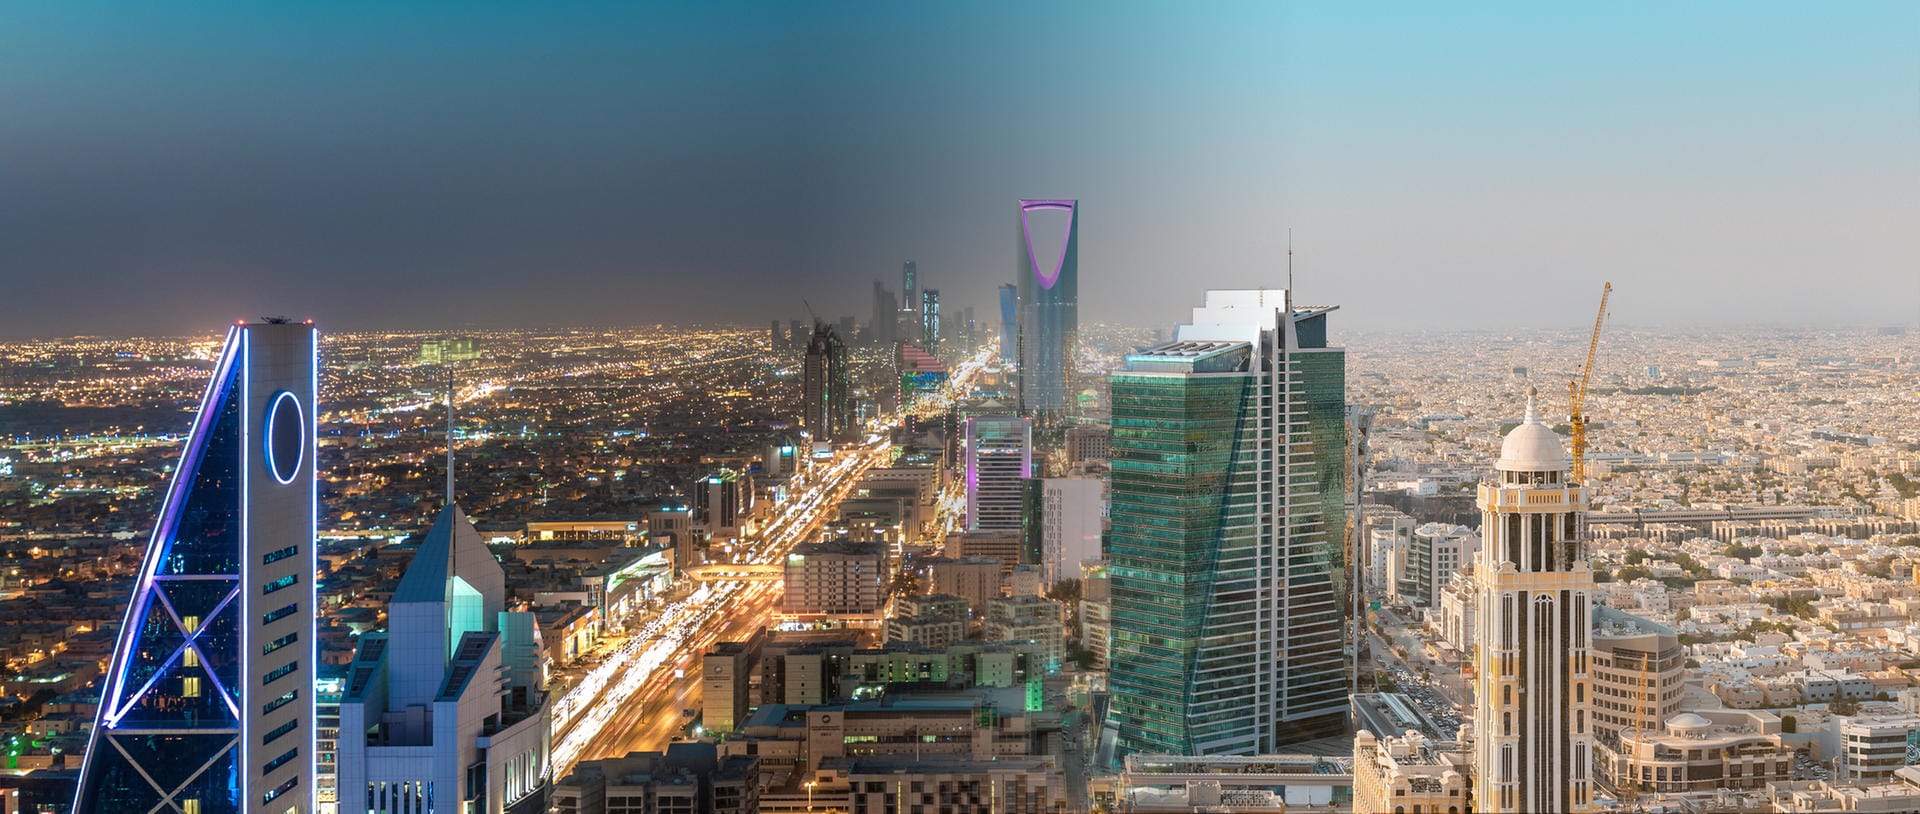 Die Hauptstadt Riad: Die Metropole mit 5,1 Millionen Einwohnern liegt auf einem Wüstenplateau in Saudi-Arabien. Das Stadtbild ist geprägt von gigantischen Wolkenkratzern.